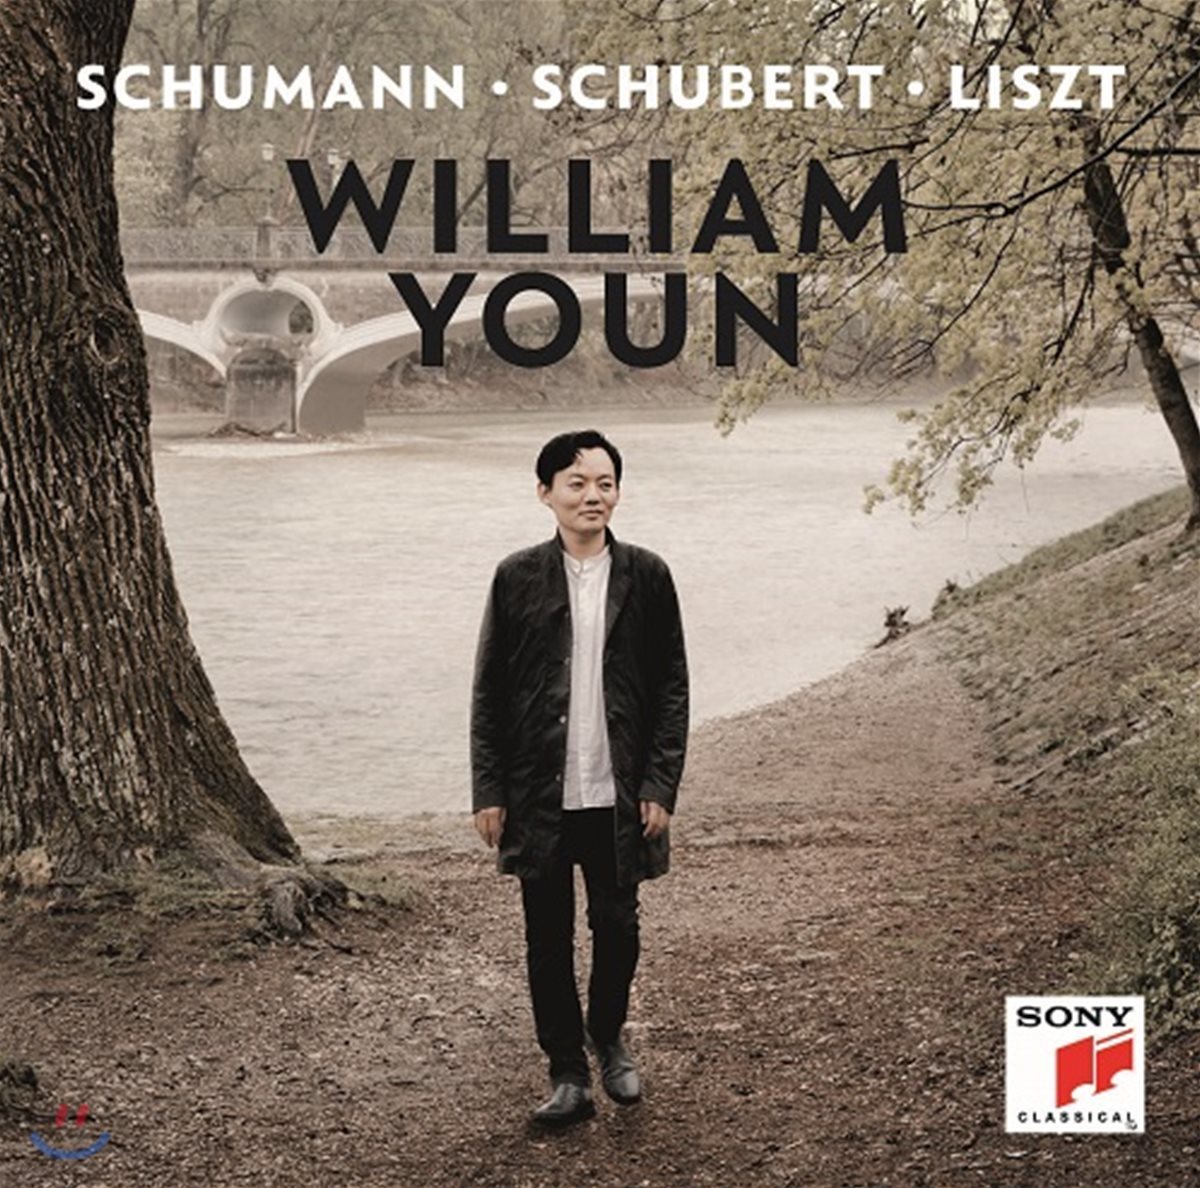 윤홍천 (William Youn) - 슈만 / 슈베르트 / 리스트 / 젬린스키: 피아노 독주집 (Schumann - Schubert - Liszt) 